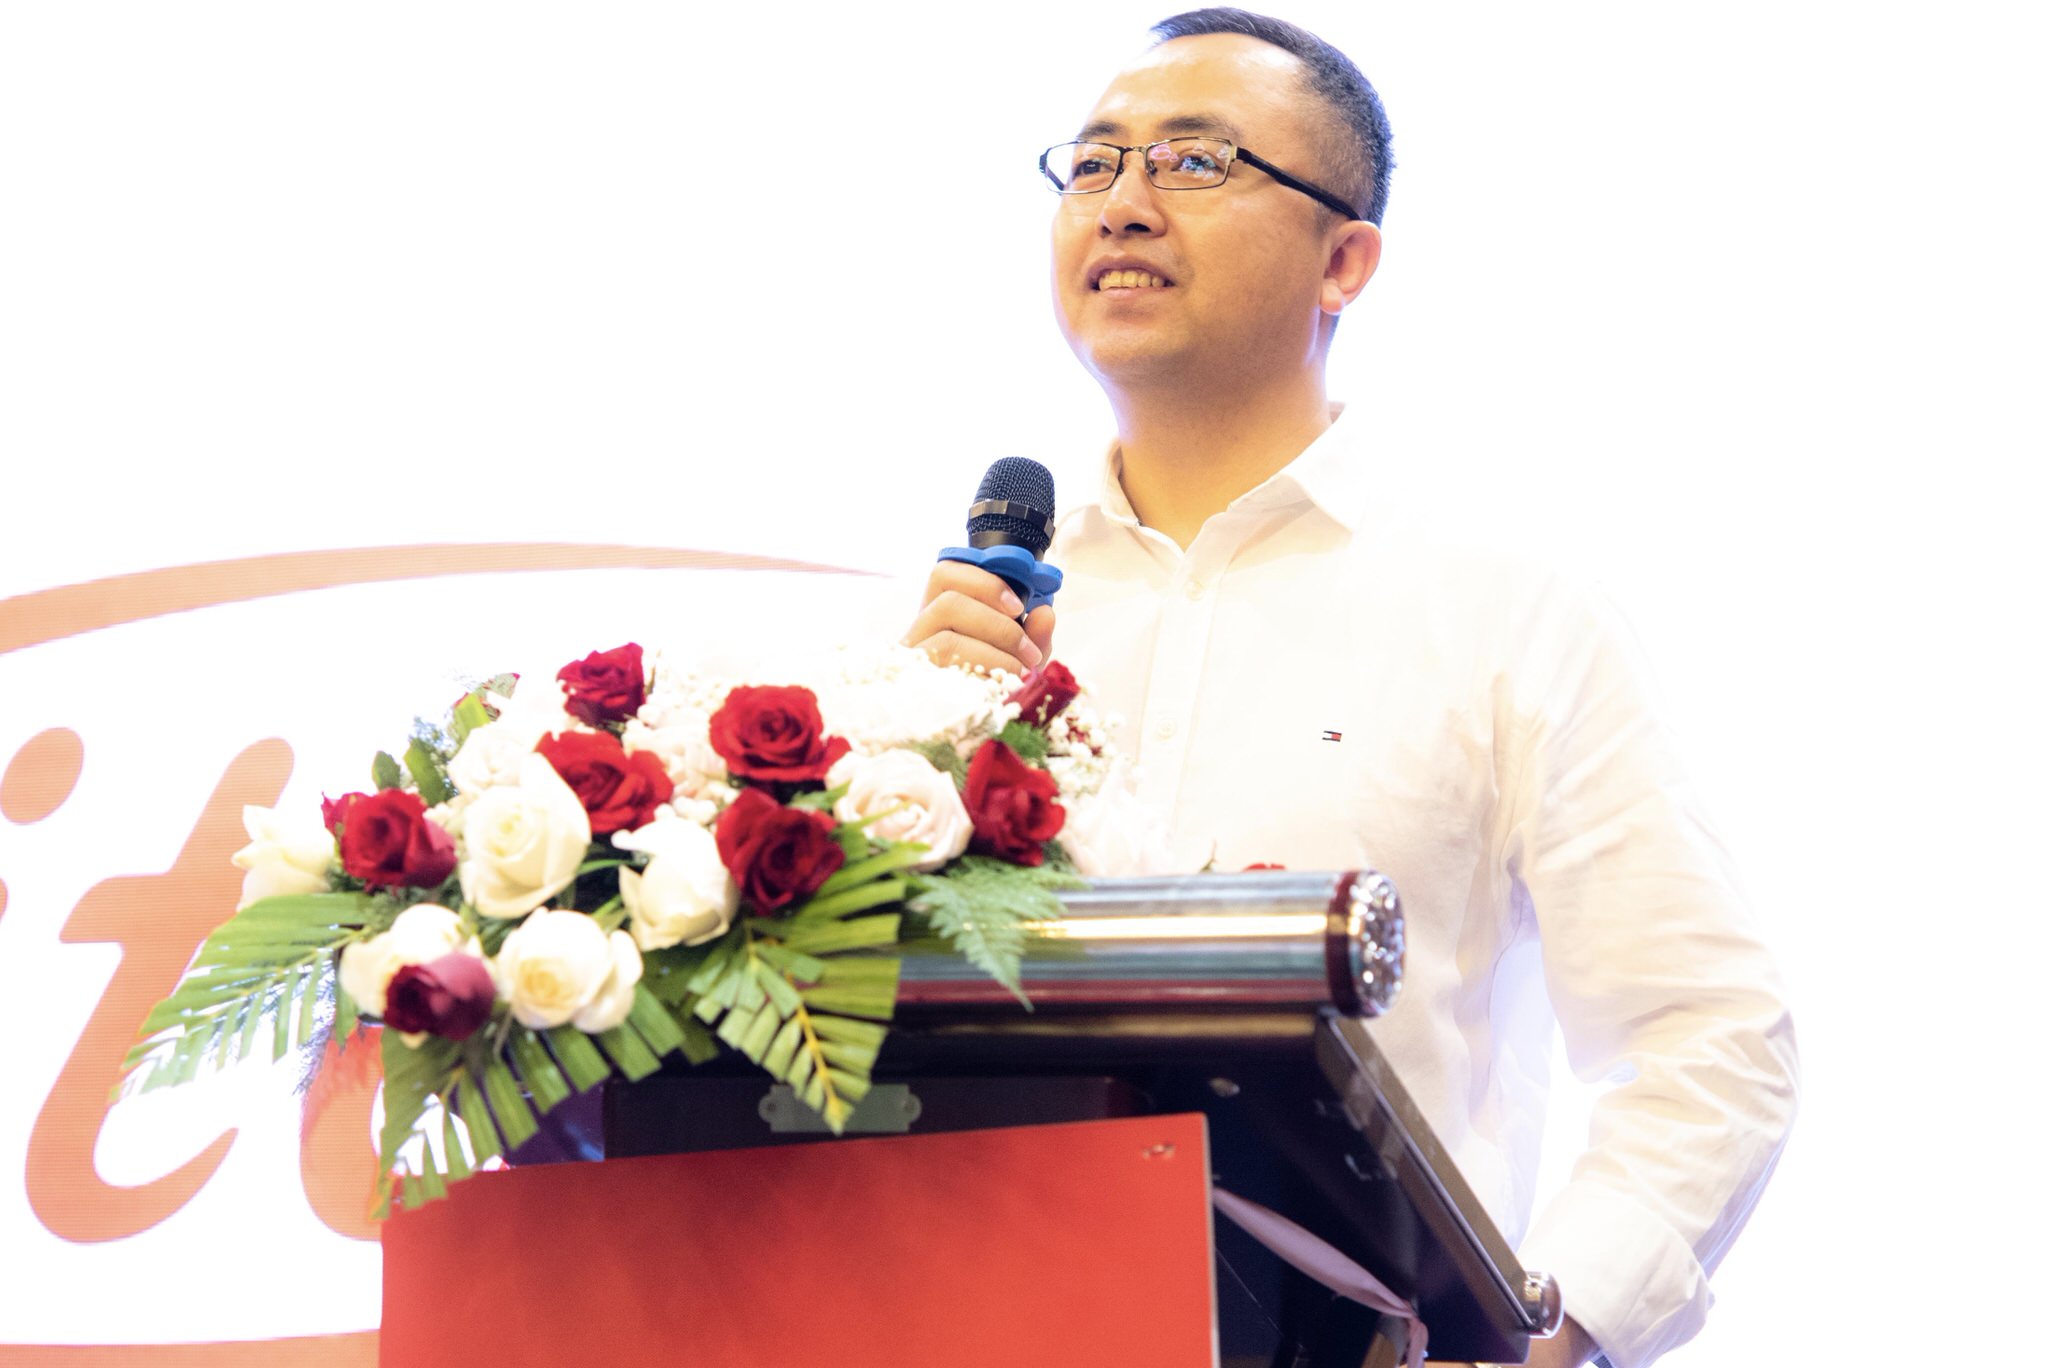 Itel Mobile, hai năm gia nhập thị trường Việt Nam, vượt khó khăn để tạo thành tựu